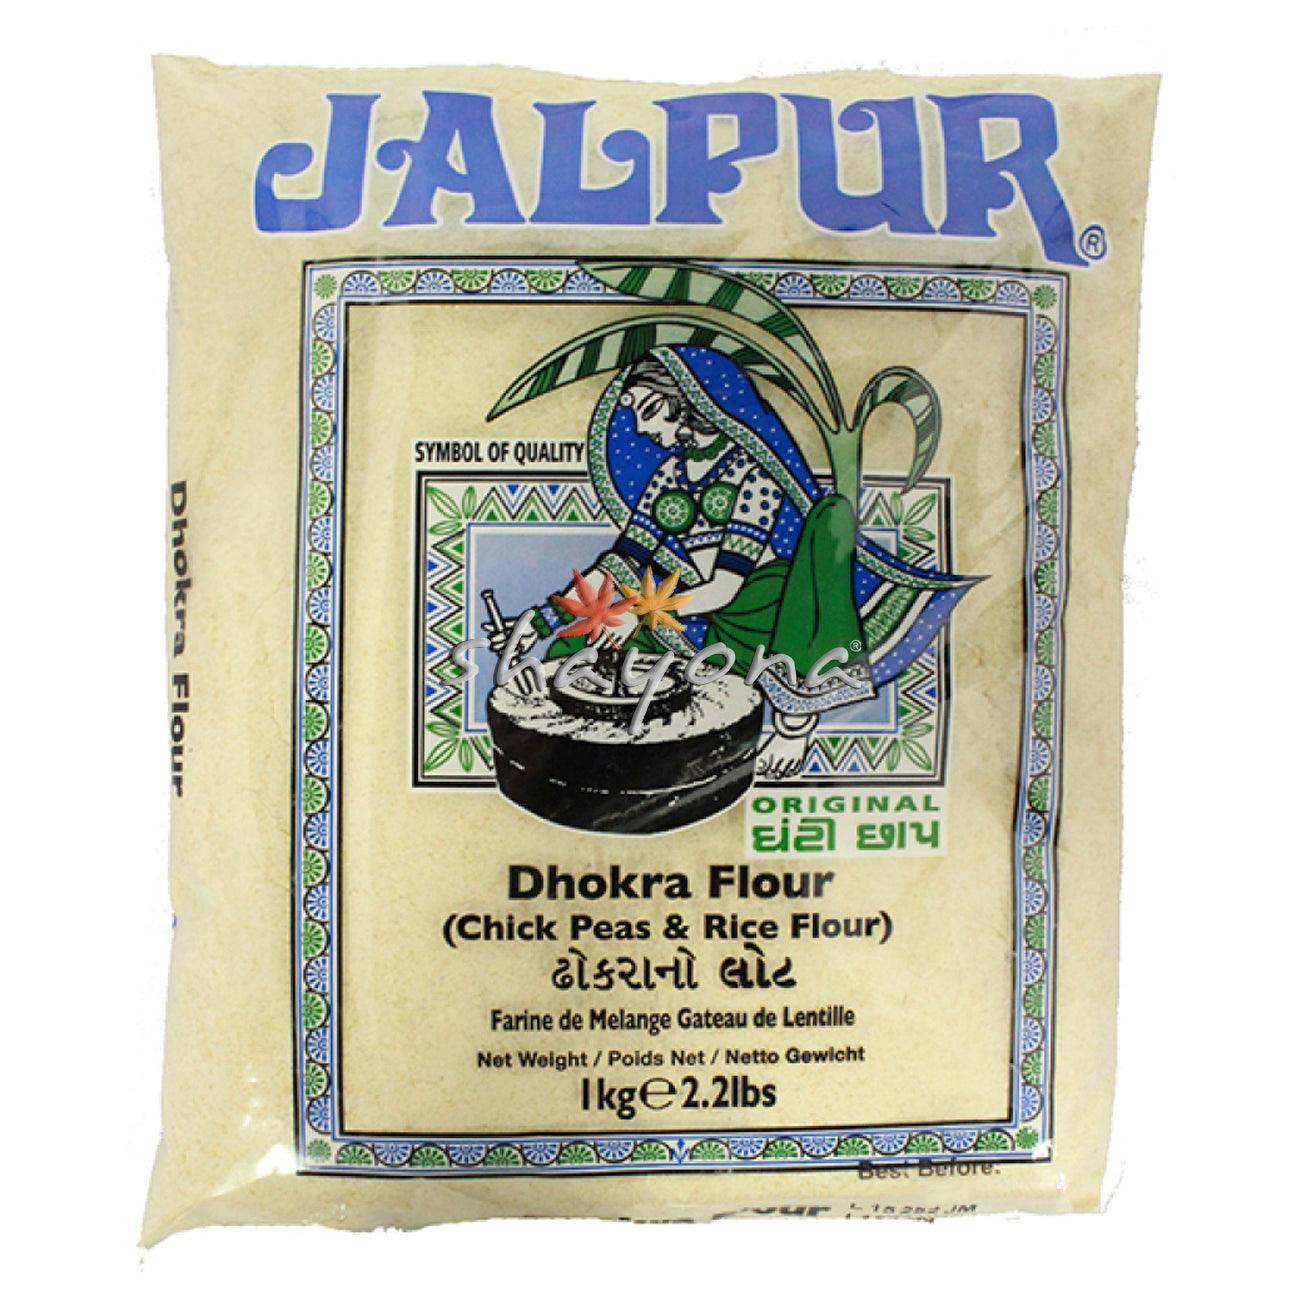 Jalpur Dhokra Flour - Shayona UK